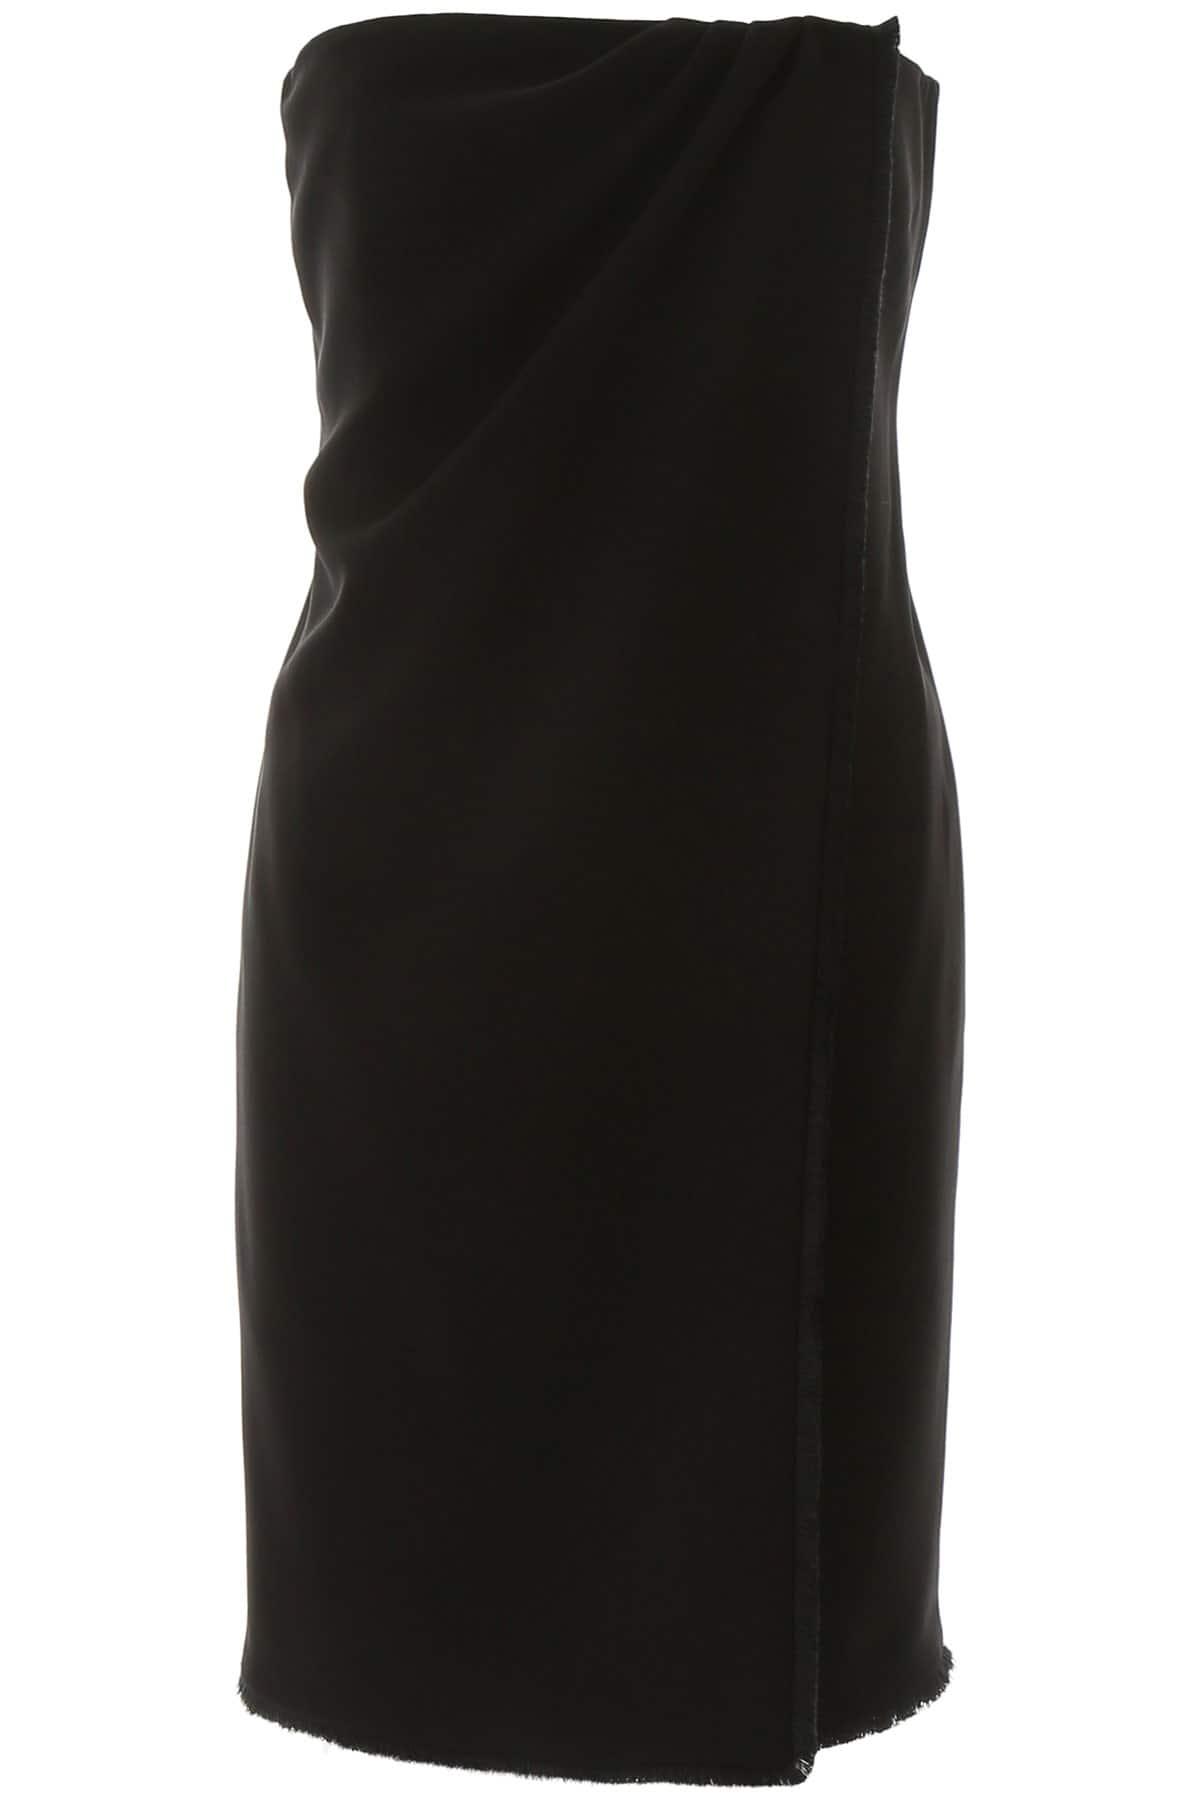 Max Mara Satin Strapless Mini Dress in Black - Lyst